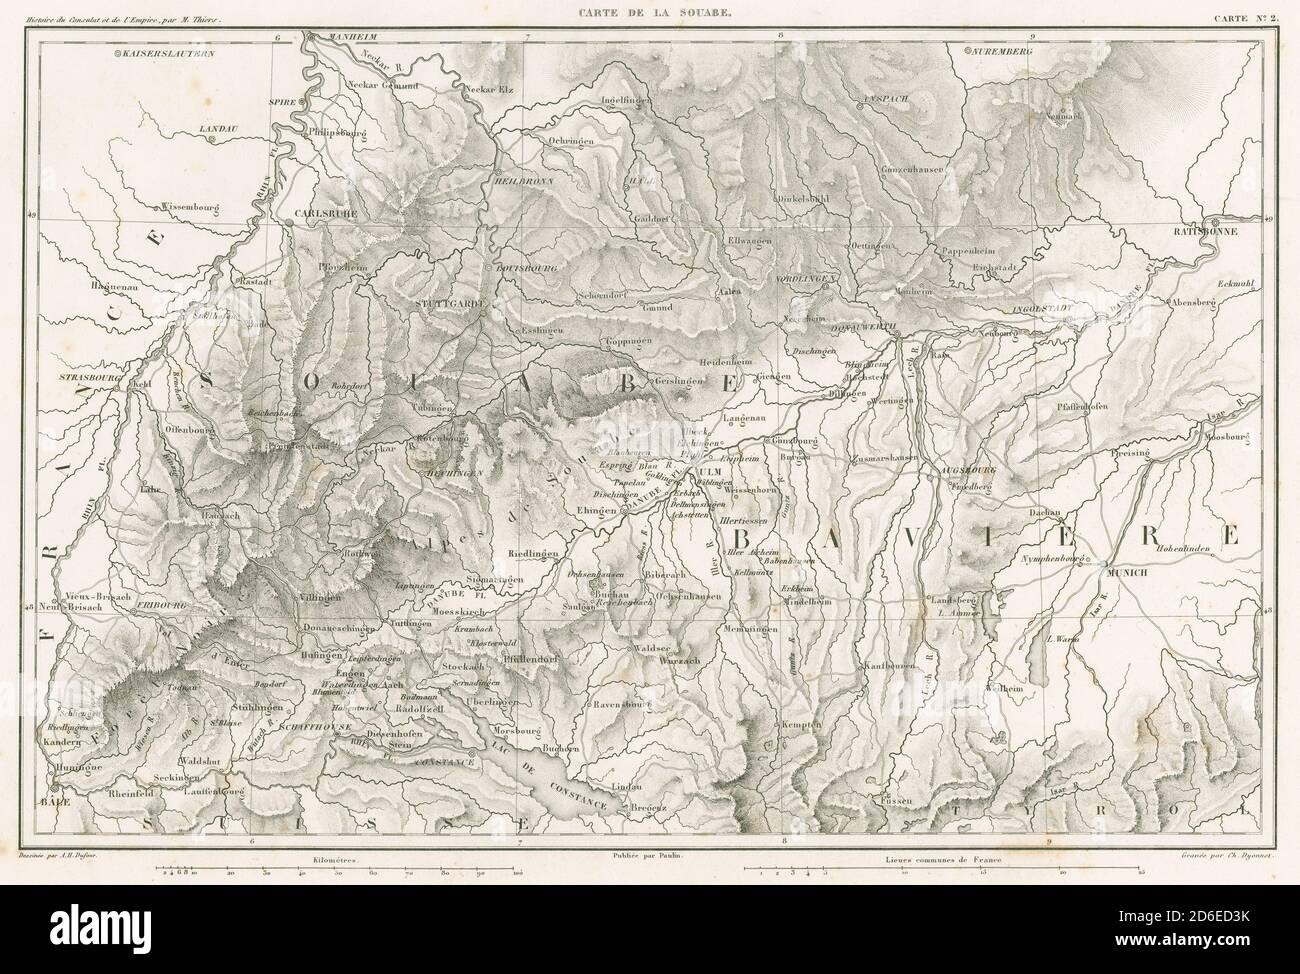 Antike 1859 gravierte französische Landkarte, Carte de la Souabe. Die Souabe (Schwaben) ist eine historische Region im Südwesten Deutschlands. QUELLE: ORIGINALGRAVUR Stockfoto